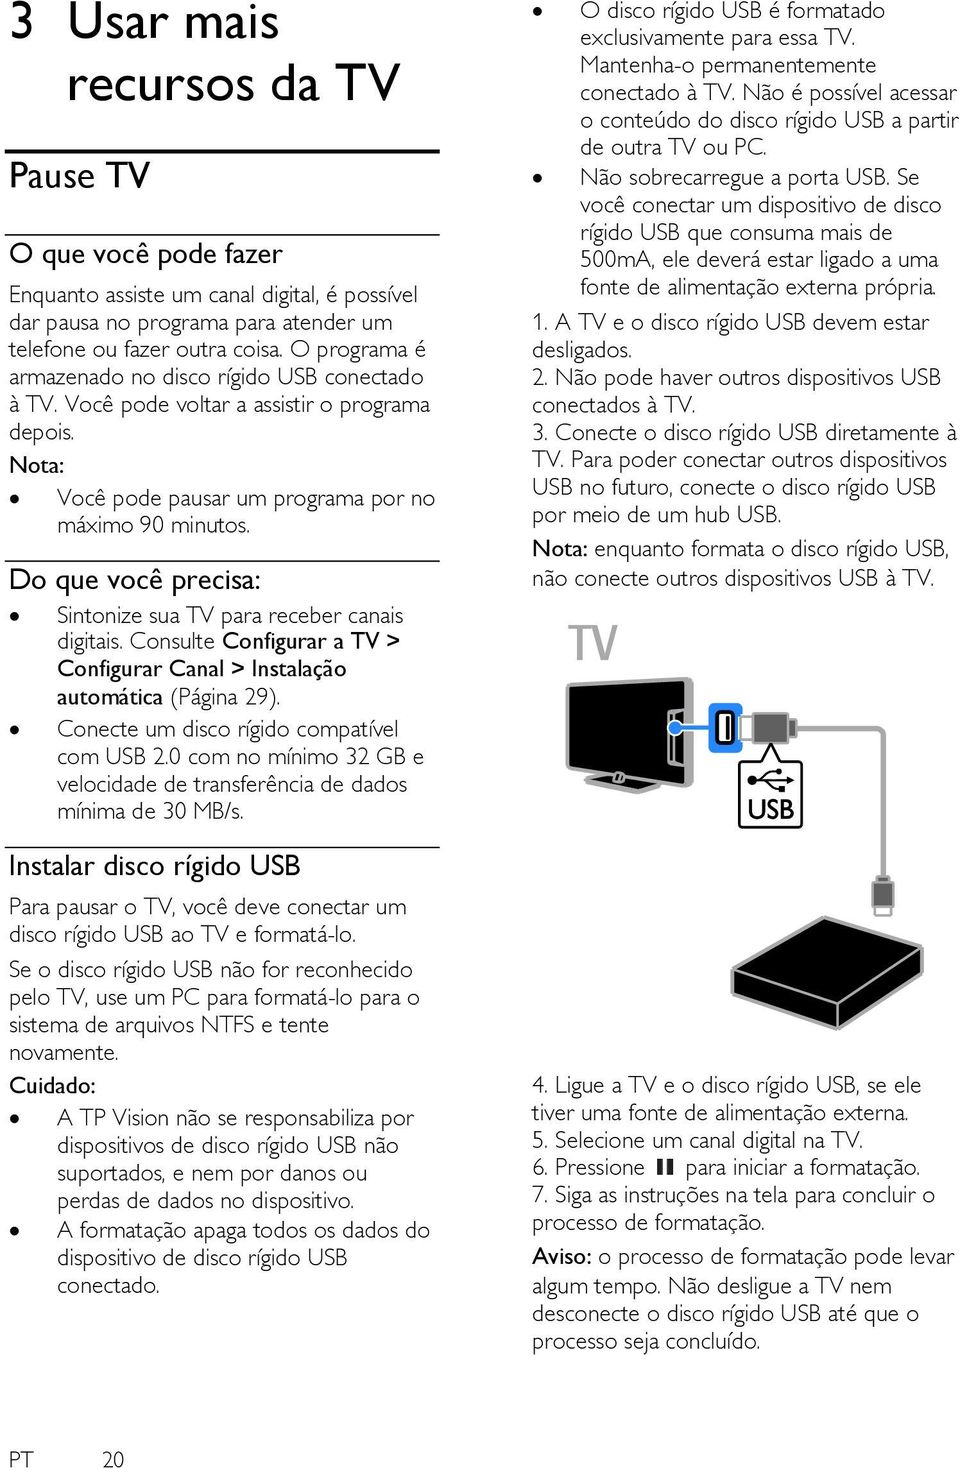 Do que você precisa: Sintonize sua TV para receber canais digitais. Consulte Configurar a TV > Configurar Canal > Instalação automática (Página 29). Conecte um disco rígido compatível com USB 2.